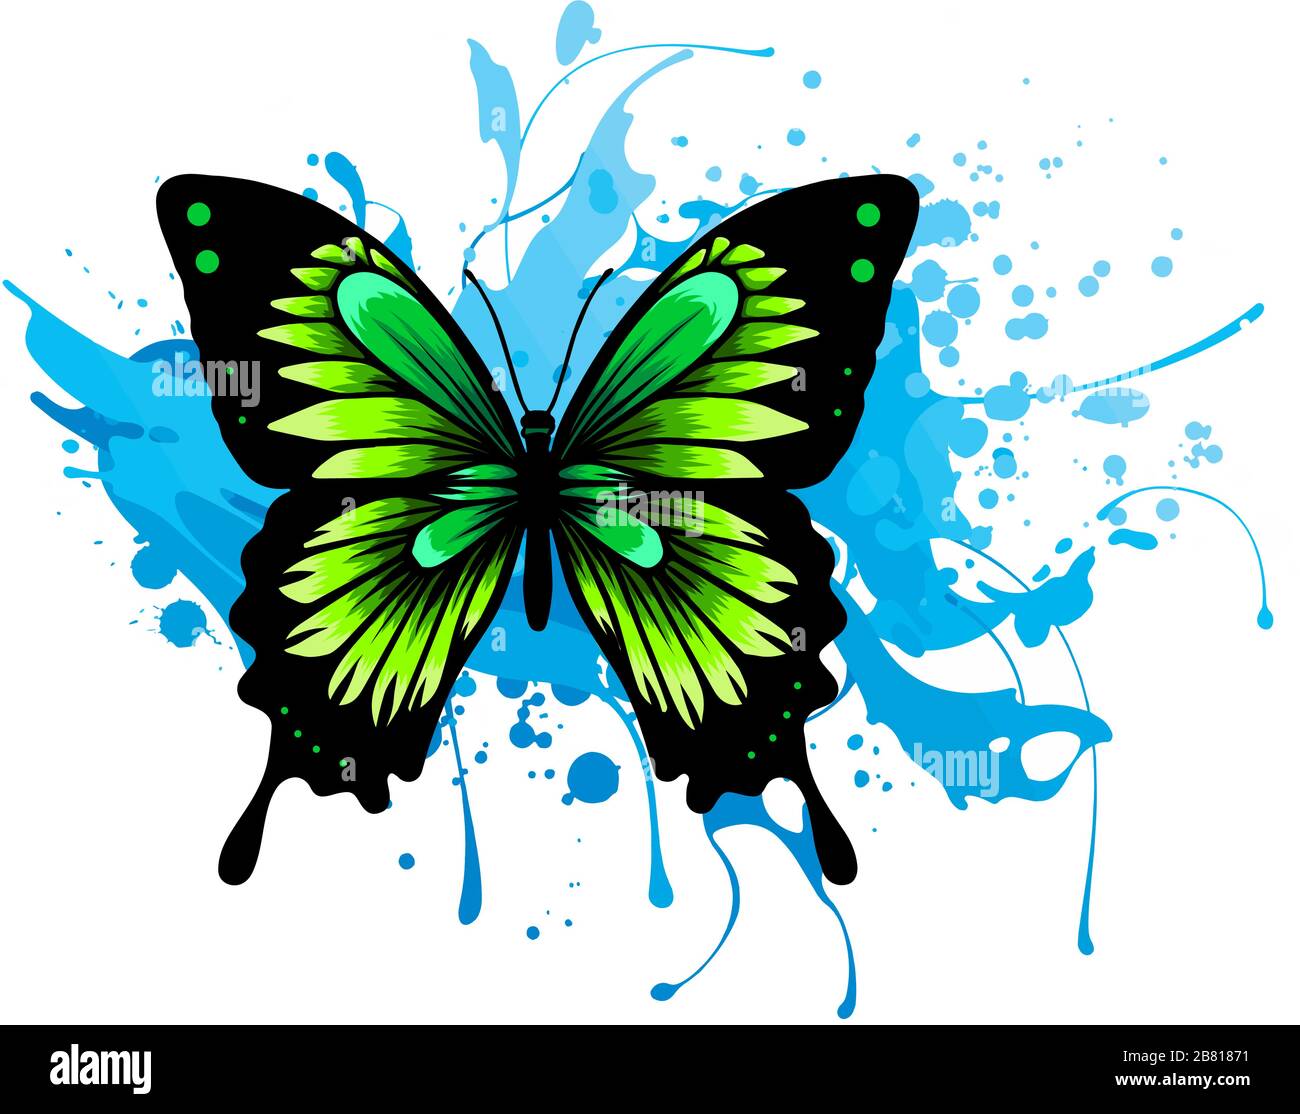 Papillon monarque réaliste dans toutes les couleurs de l'arc-en-ciel sur fond blanc. Vecteur Illustration de Vecteur